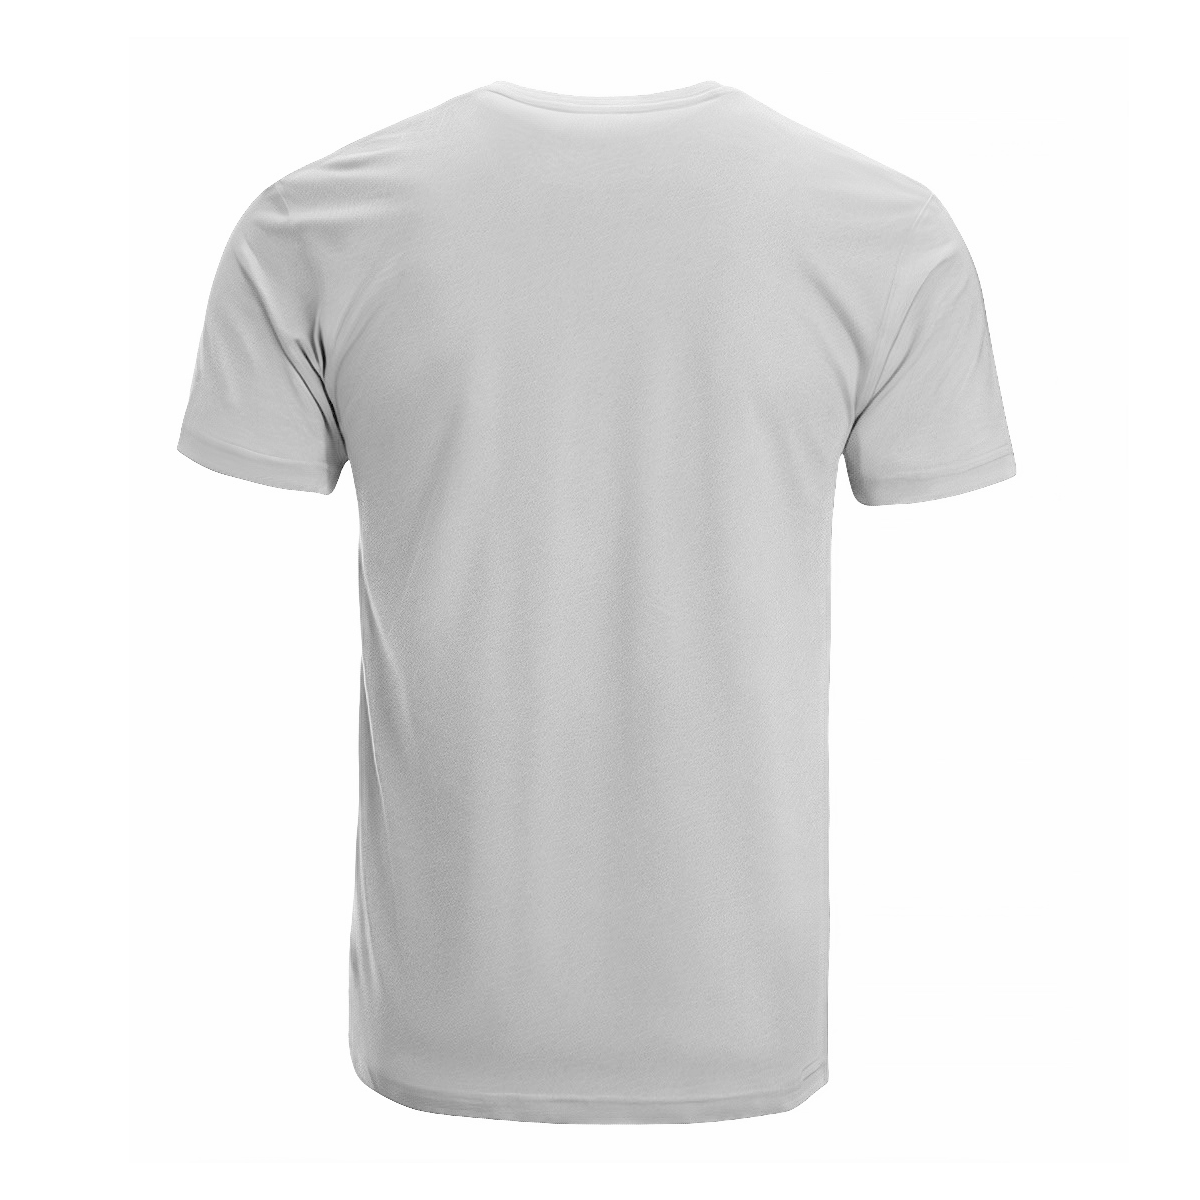 Sutherland I Tartan Crest T-shirt - I'm not yelling style